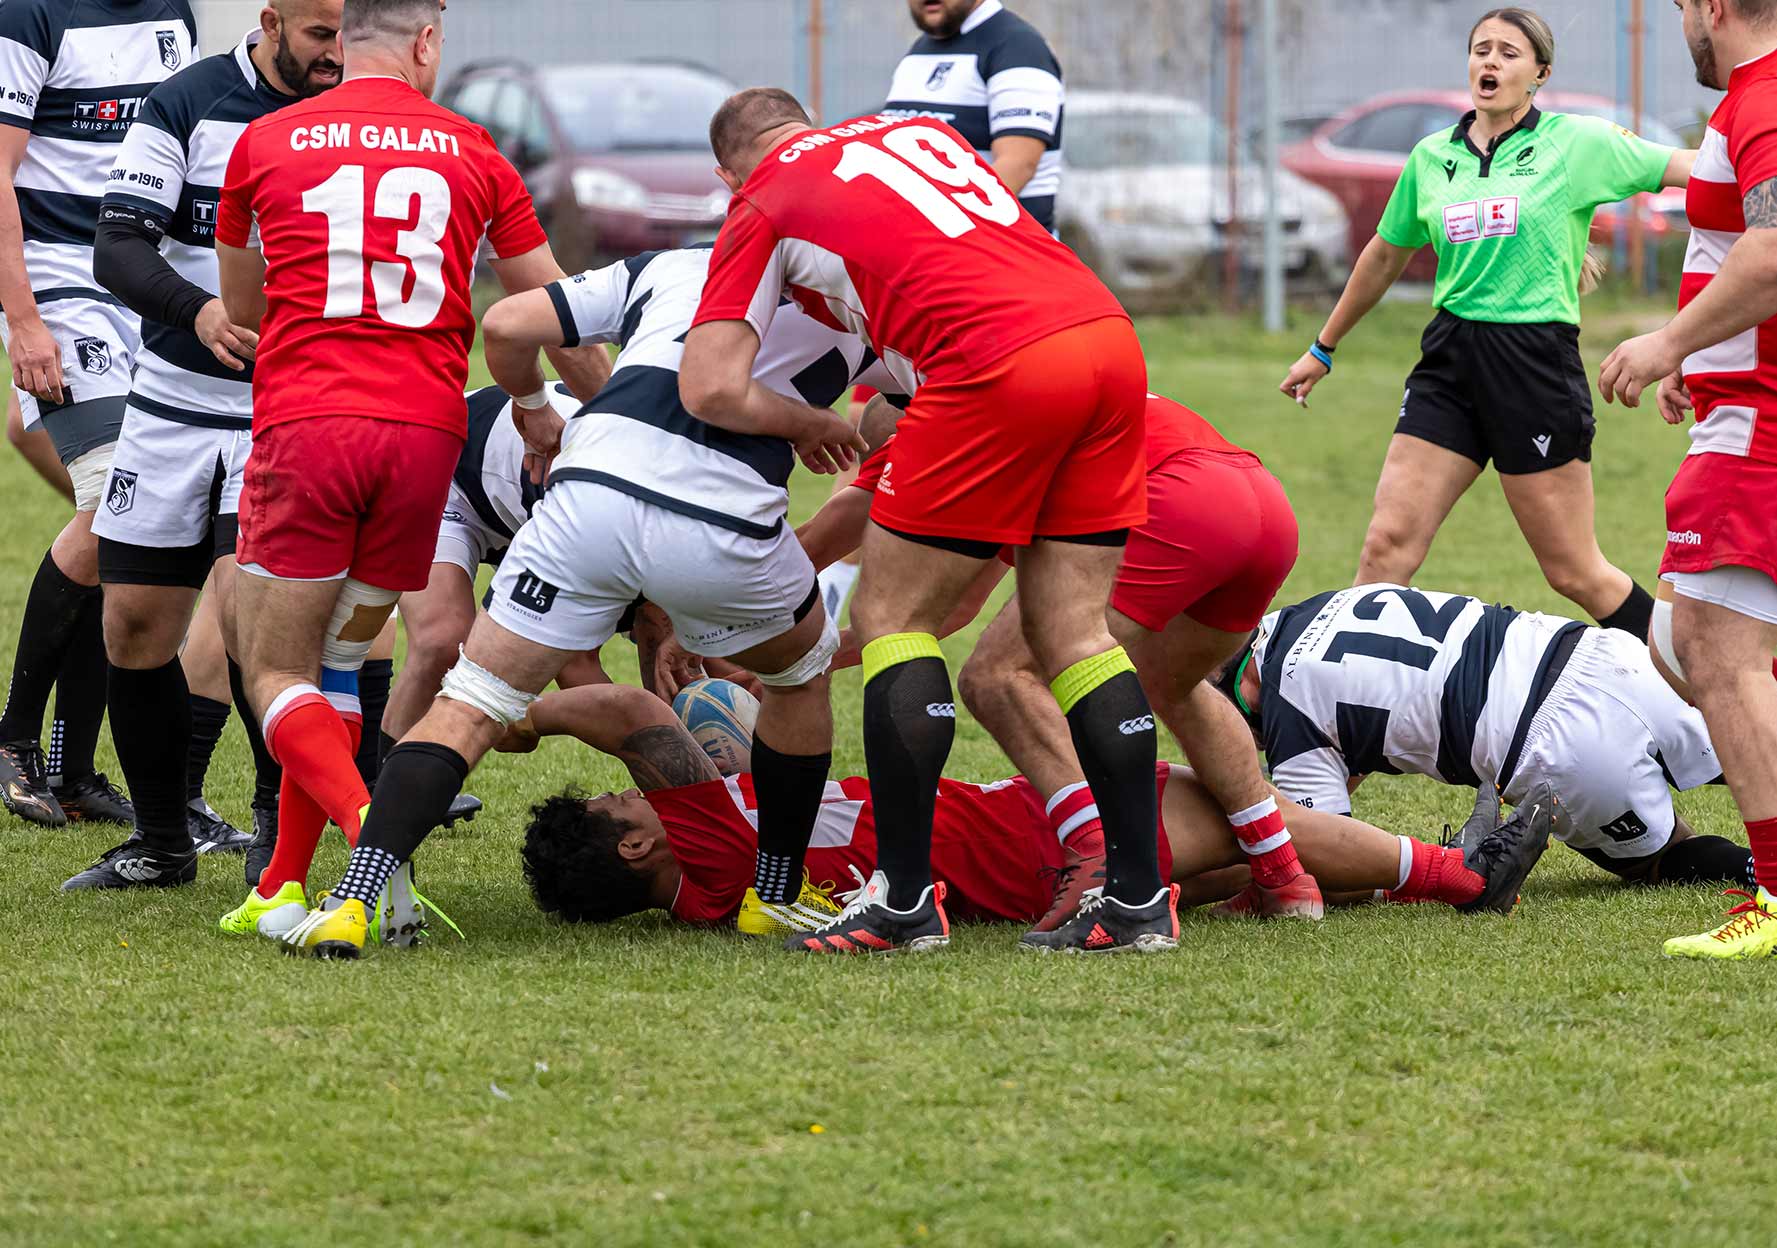 Rugby, în imagini: CSM Galaţi - Sportul Studenţesc (61-0)